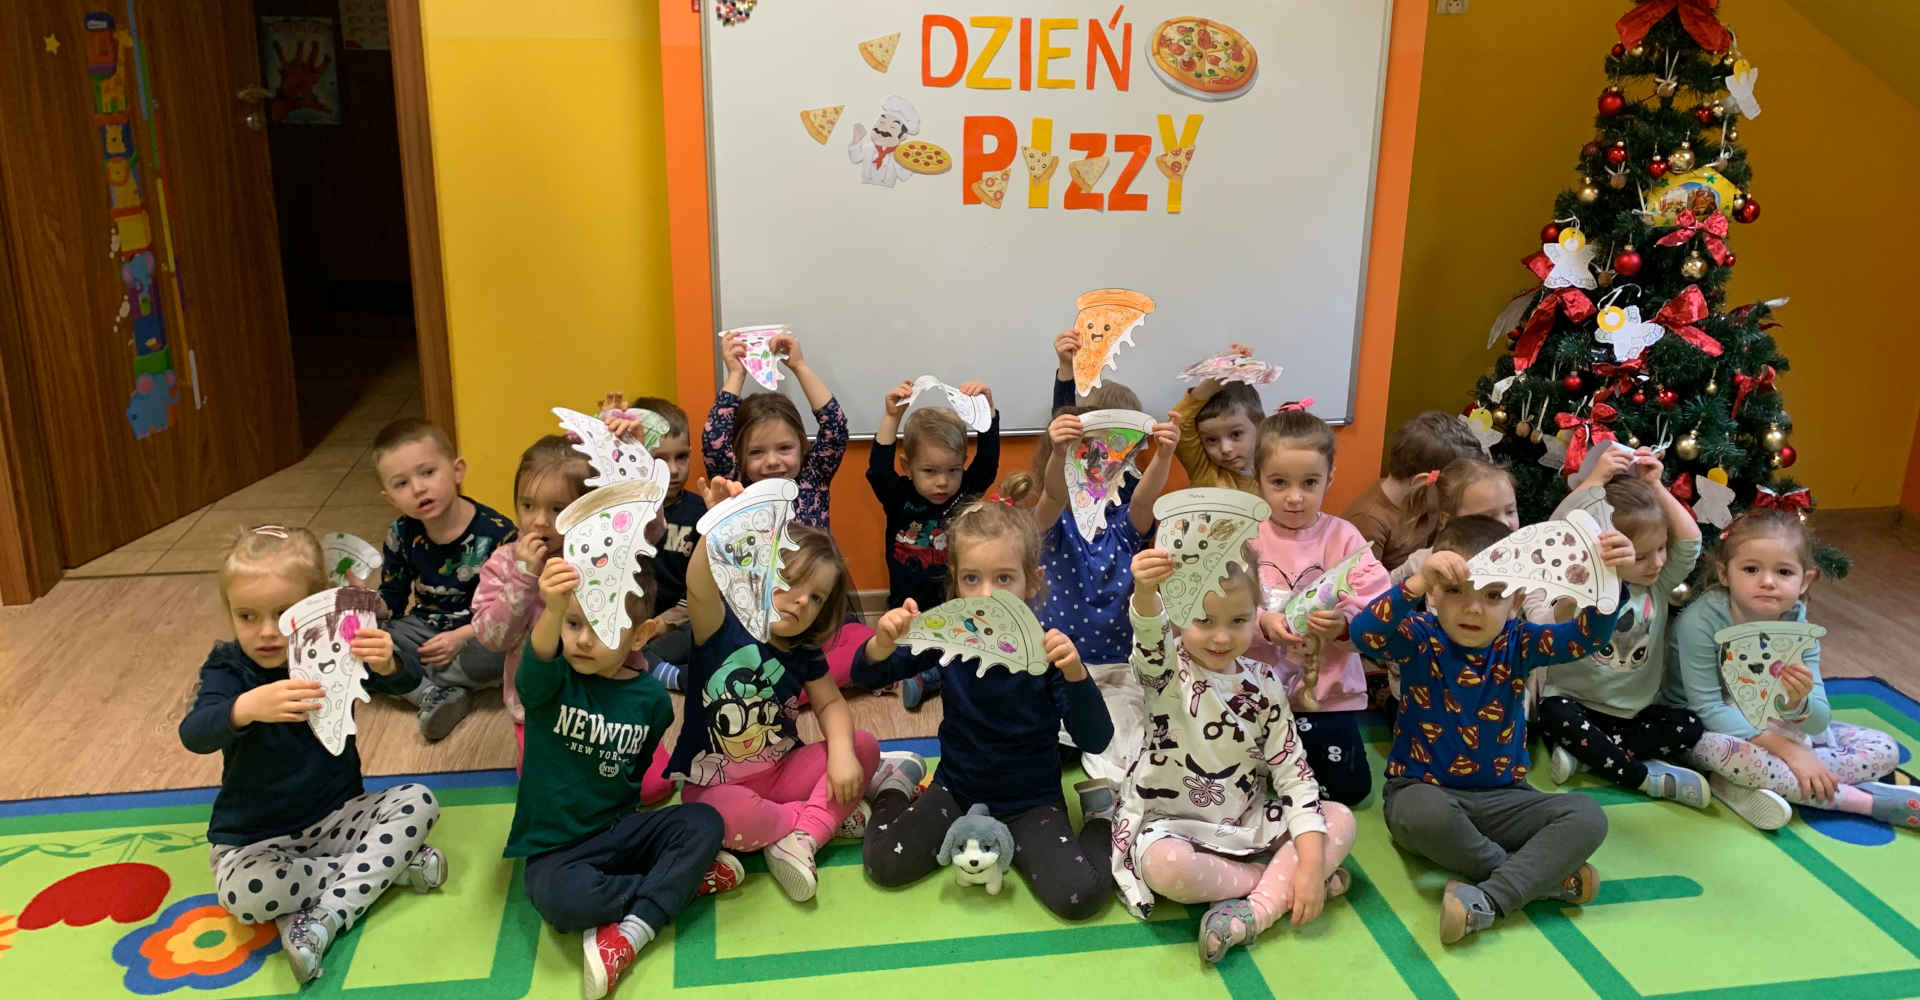 Zdjęcie grupowe dzieci z napisem Dzień Pizzy